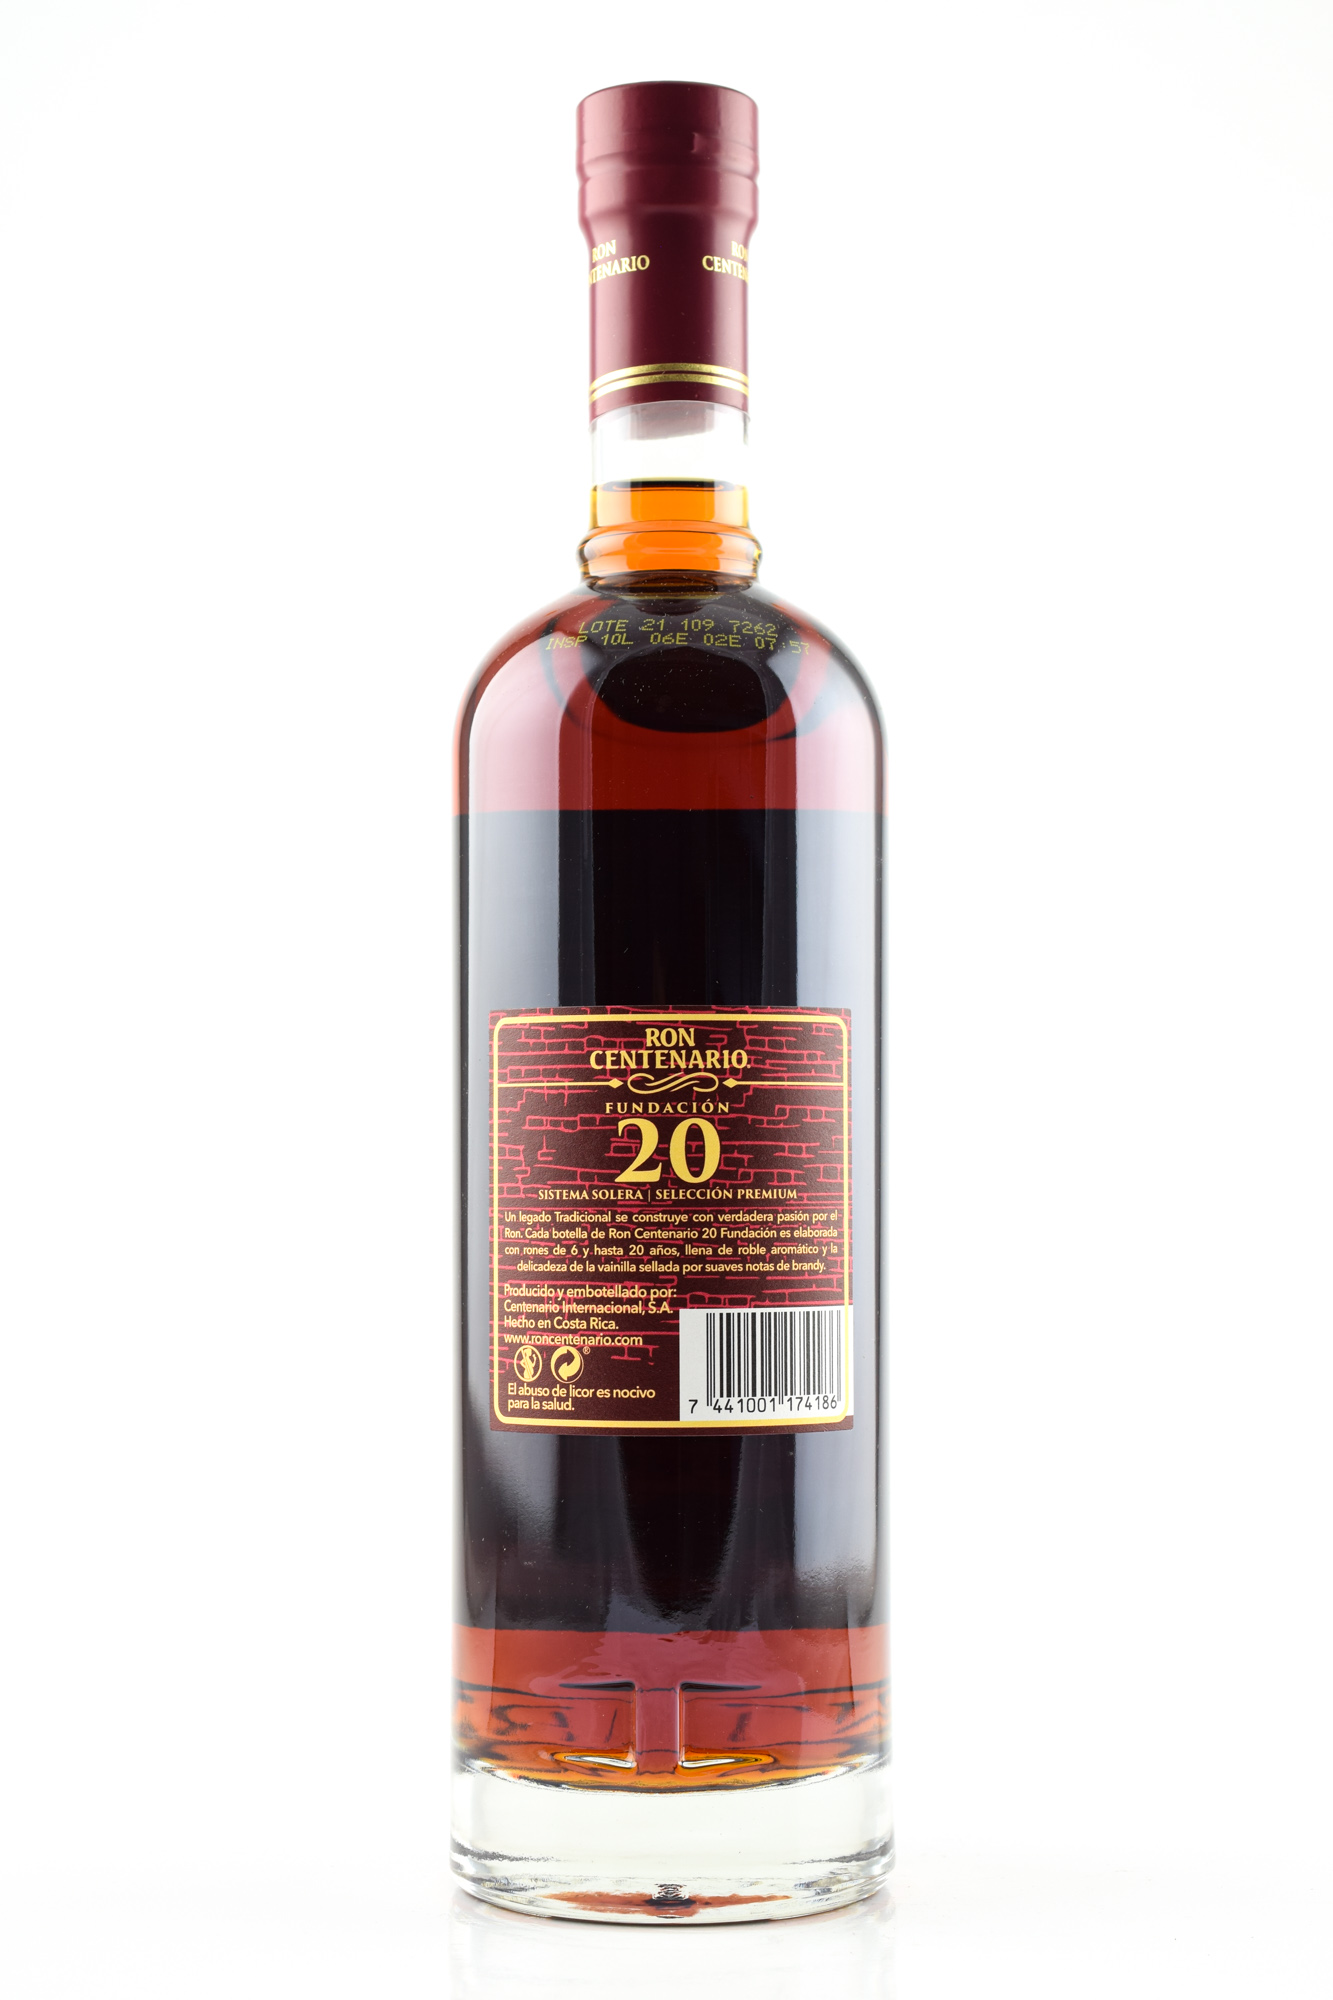 Ron Centenario 20 Year Old 0,7l Fundación Malts | Rum Rum Home 40% by of vol. | | Rum type 